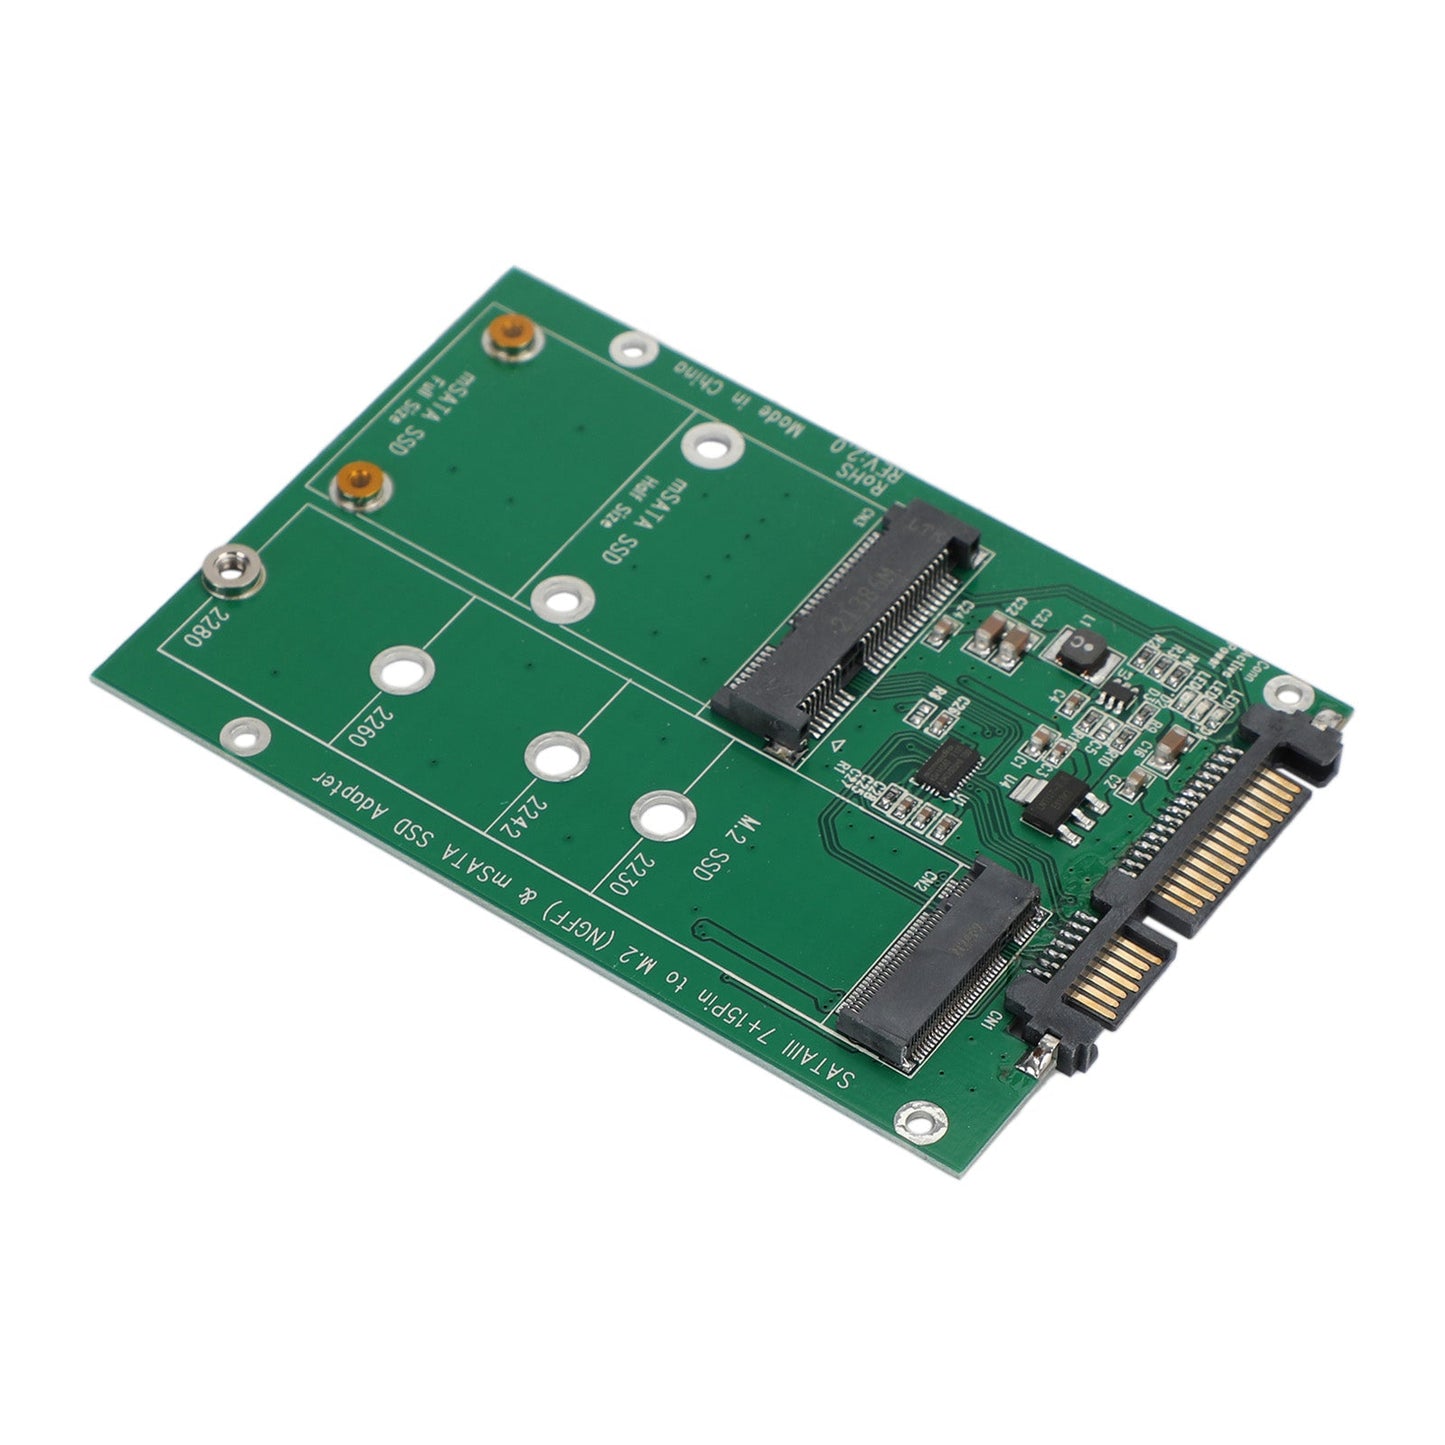 Disque dur SSD M.2 NGFF mSATA vers adaptateur SATA 3 convertisseur de carte PCI-E